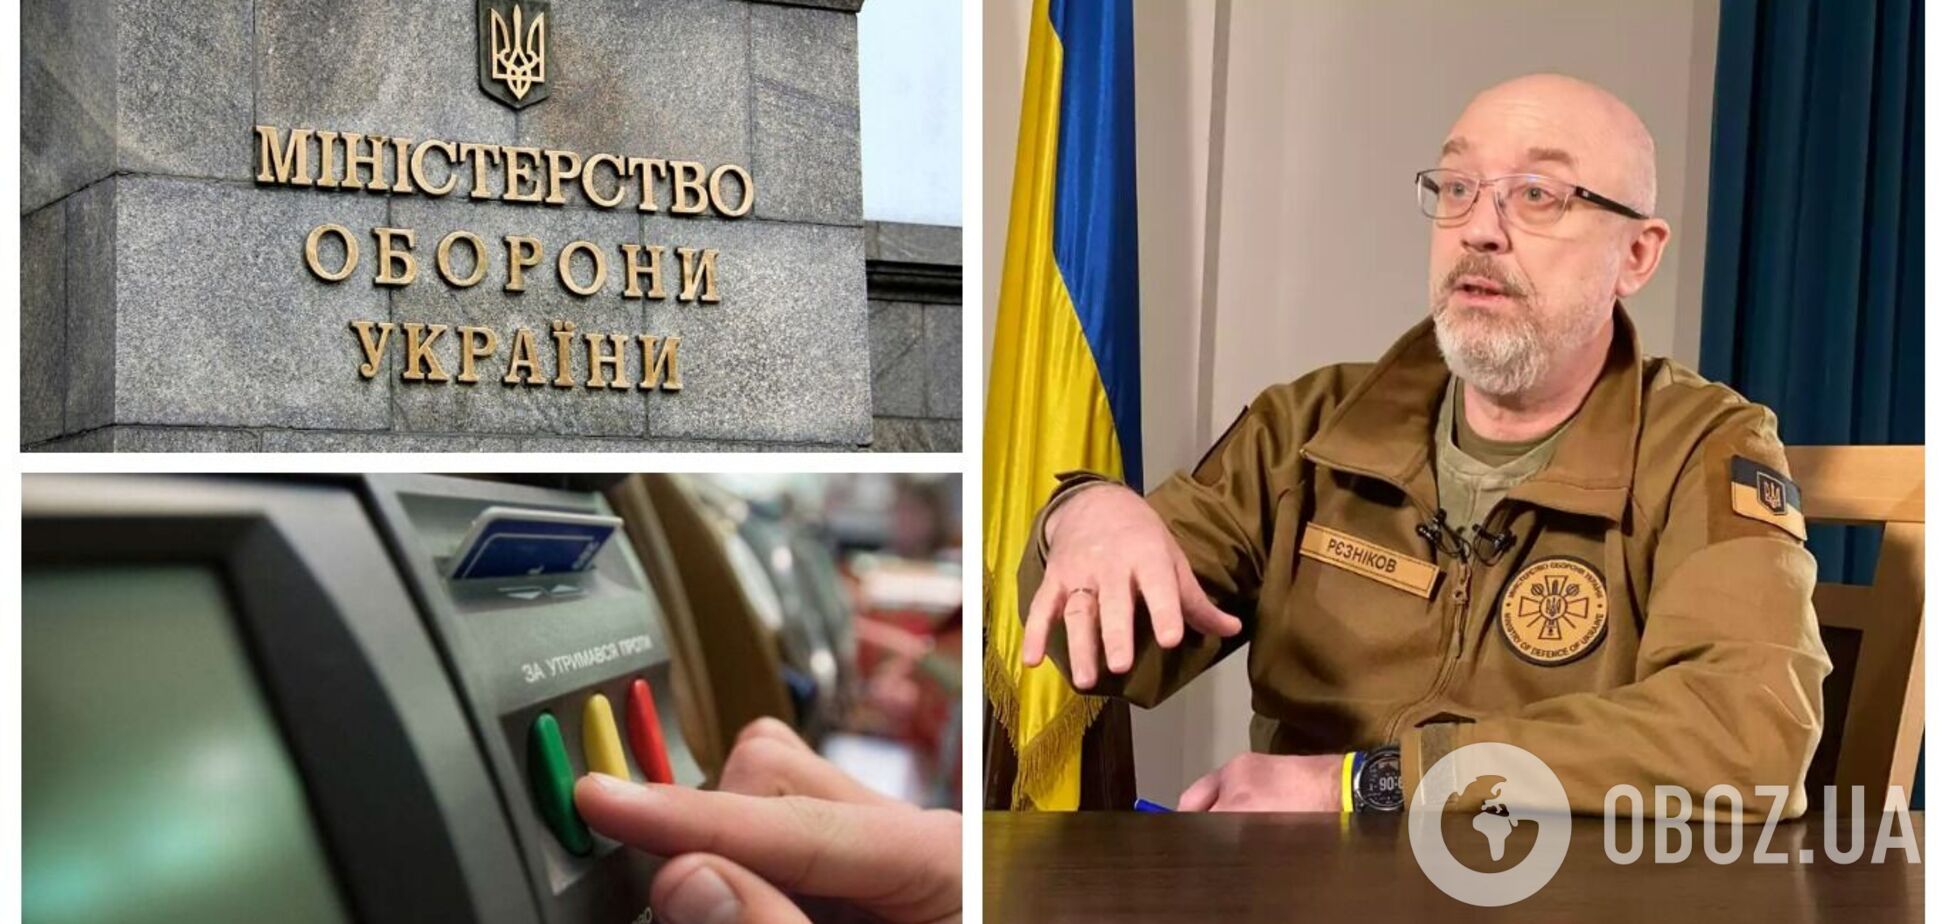 Верховна Рада підтримала відставку Резнікова з посади міністра оборони України